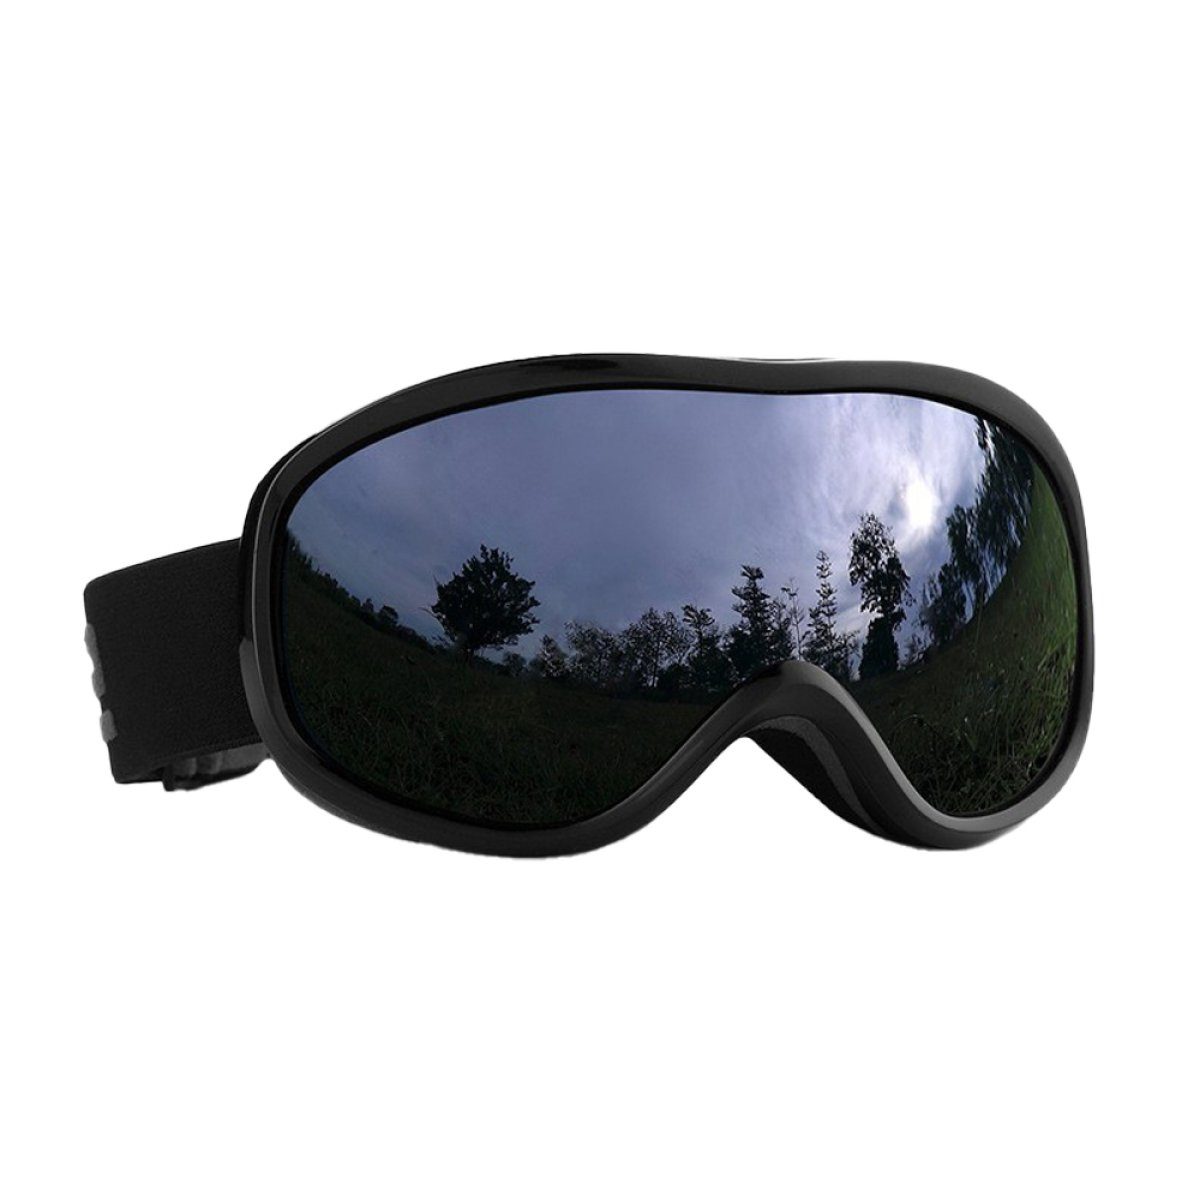 ZmdecQna Skibrille Skibrille für Damen und Herren,UV-Schutz Skibrille für brillenträger, Reduziert das Beschlagen, AugenschutzUV-Schutz grau